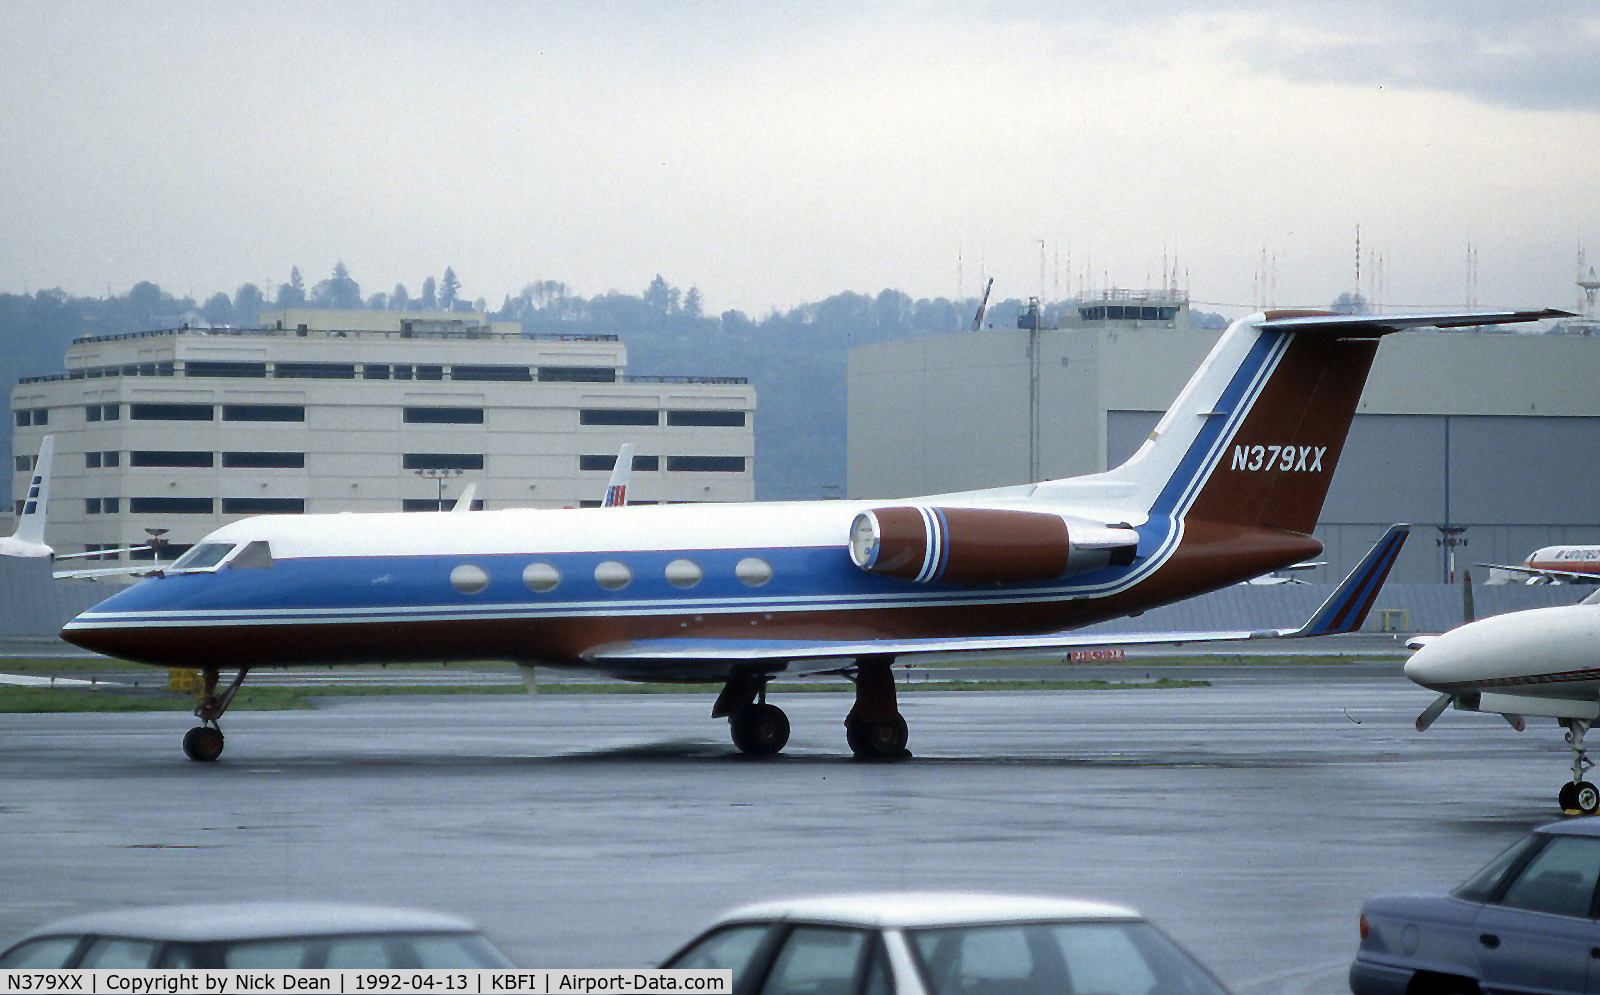 N379XX, 1983 Grumman G1159A Gulfstream III C/N 394, KBFI